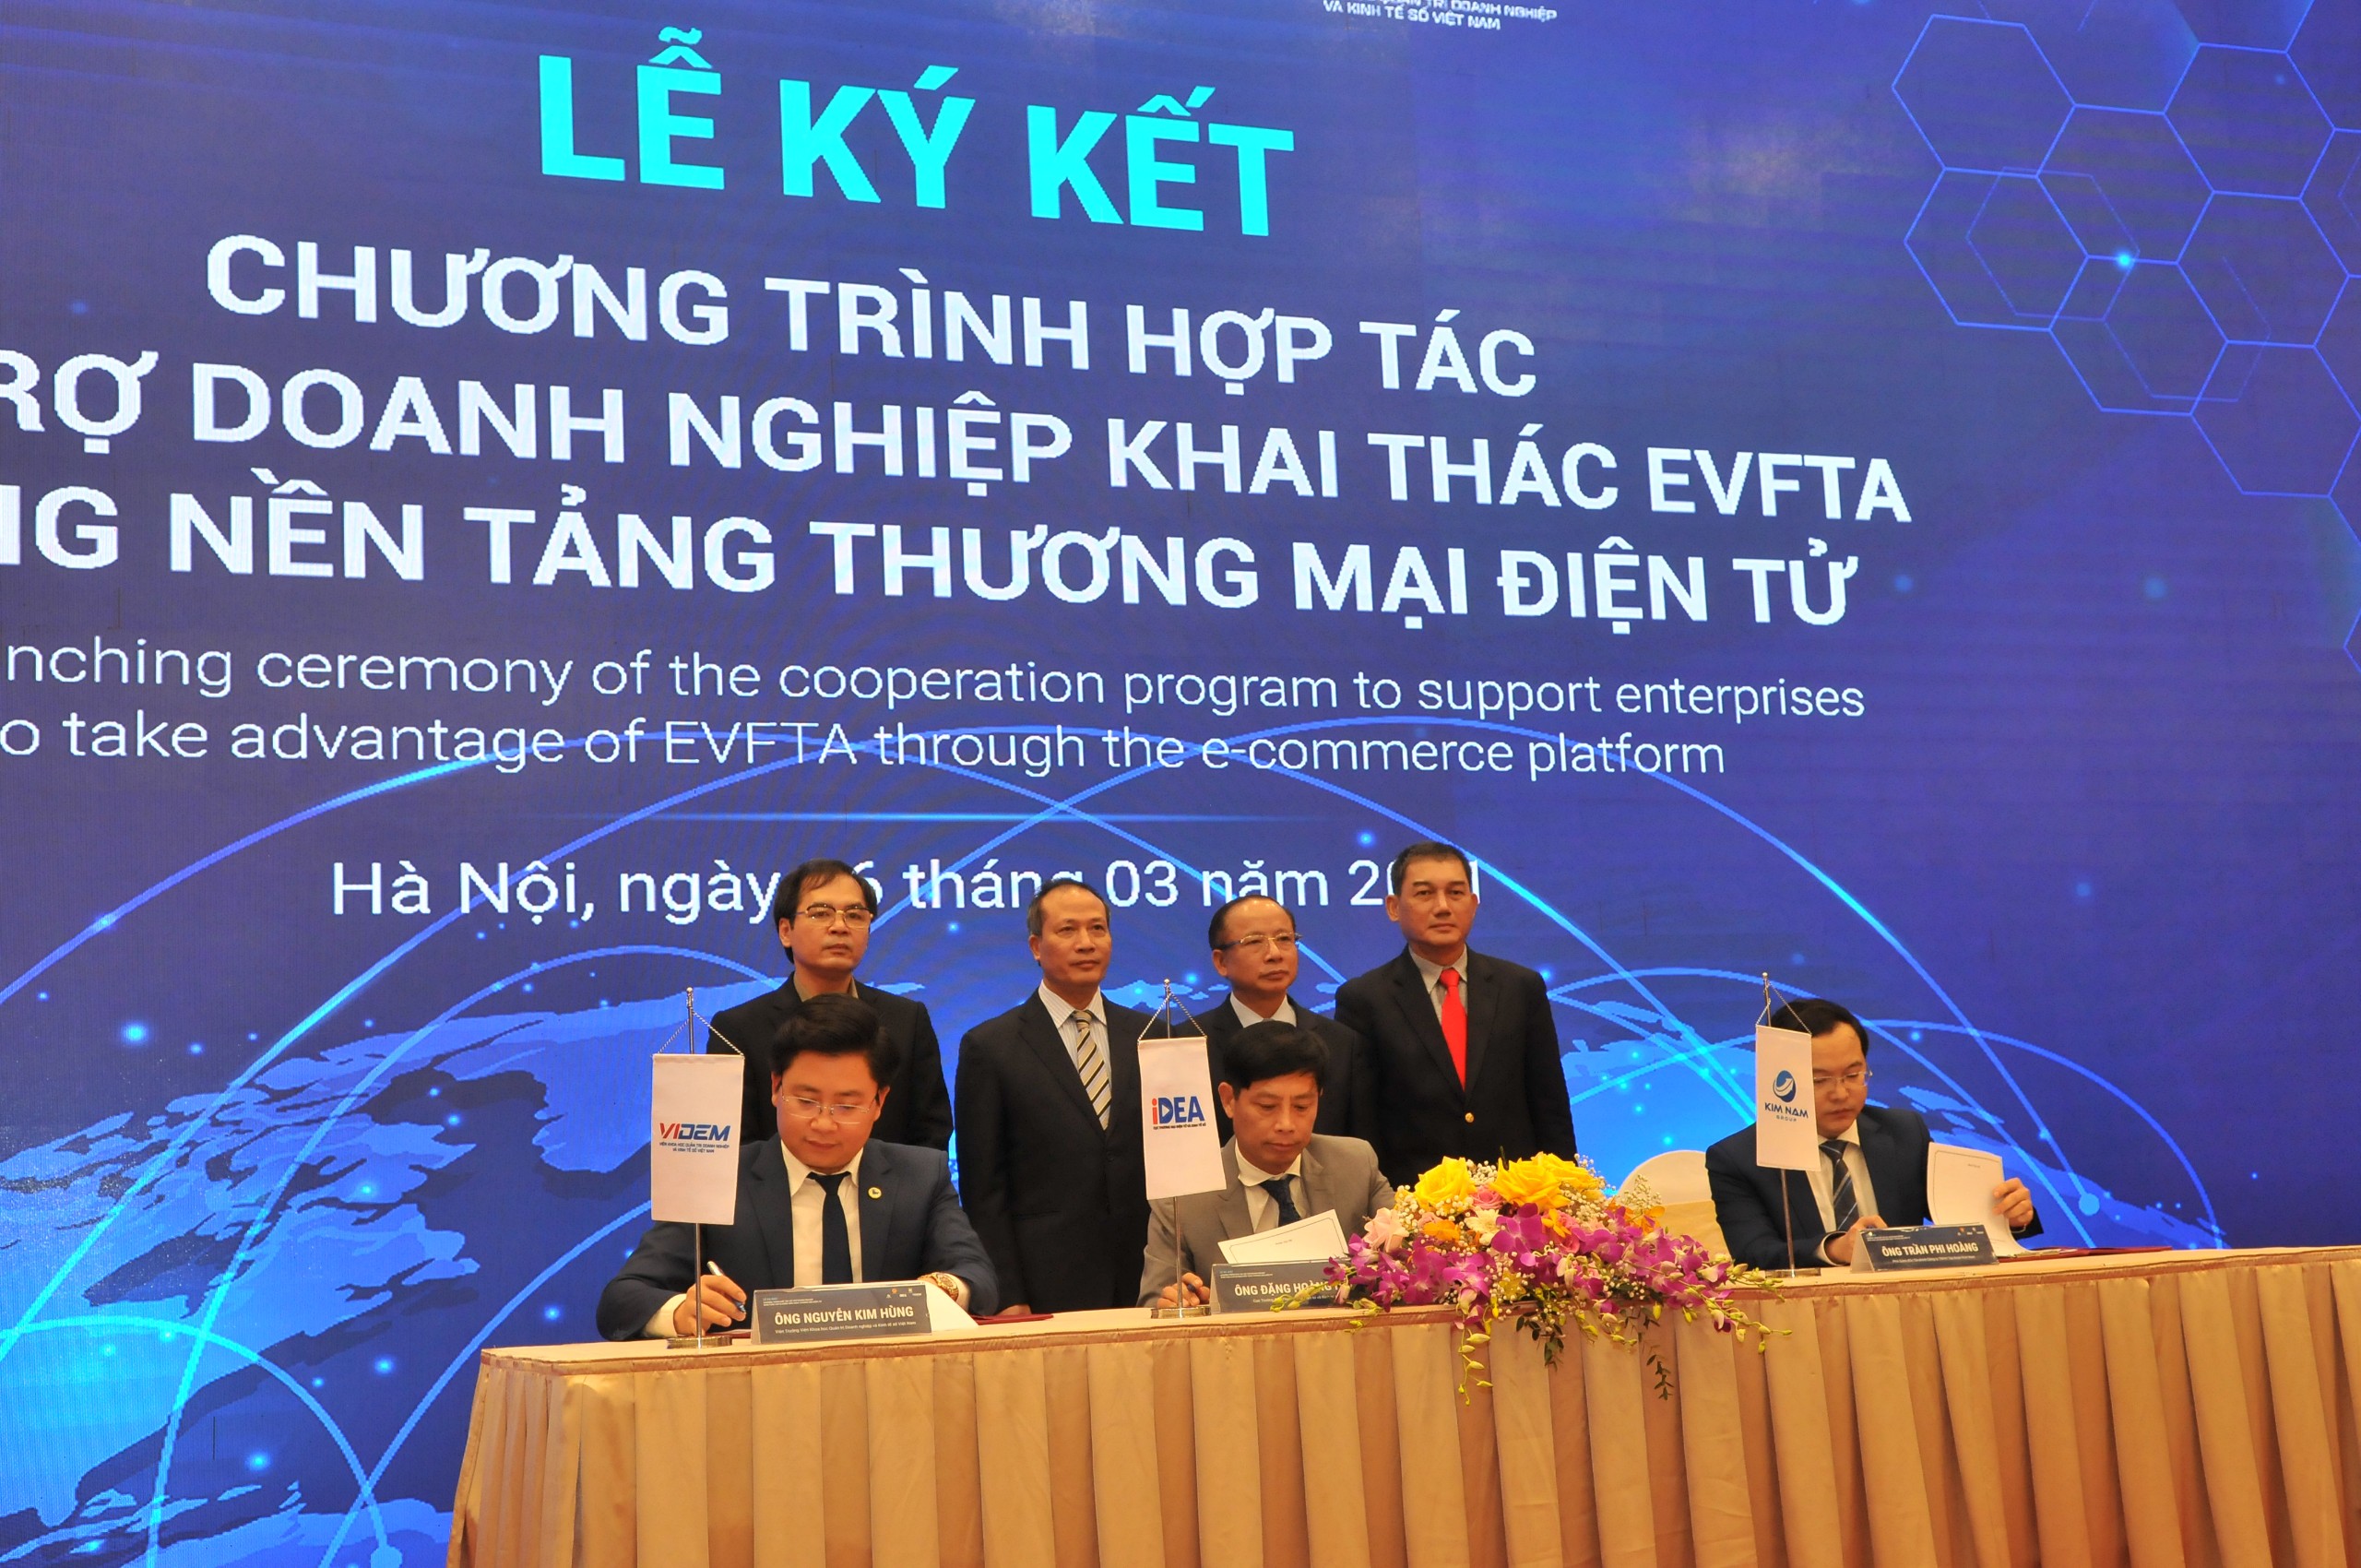 Ra mắt chương trình hợp tác hỗ trợ doanh nghiệp khai thác EVFTA bằng nền tảng thương mại điện tử